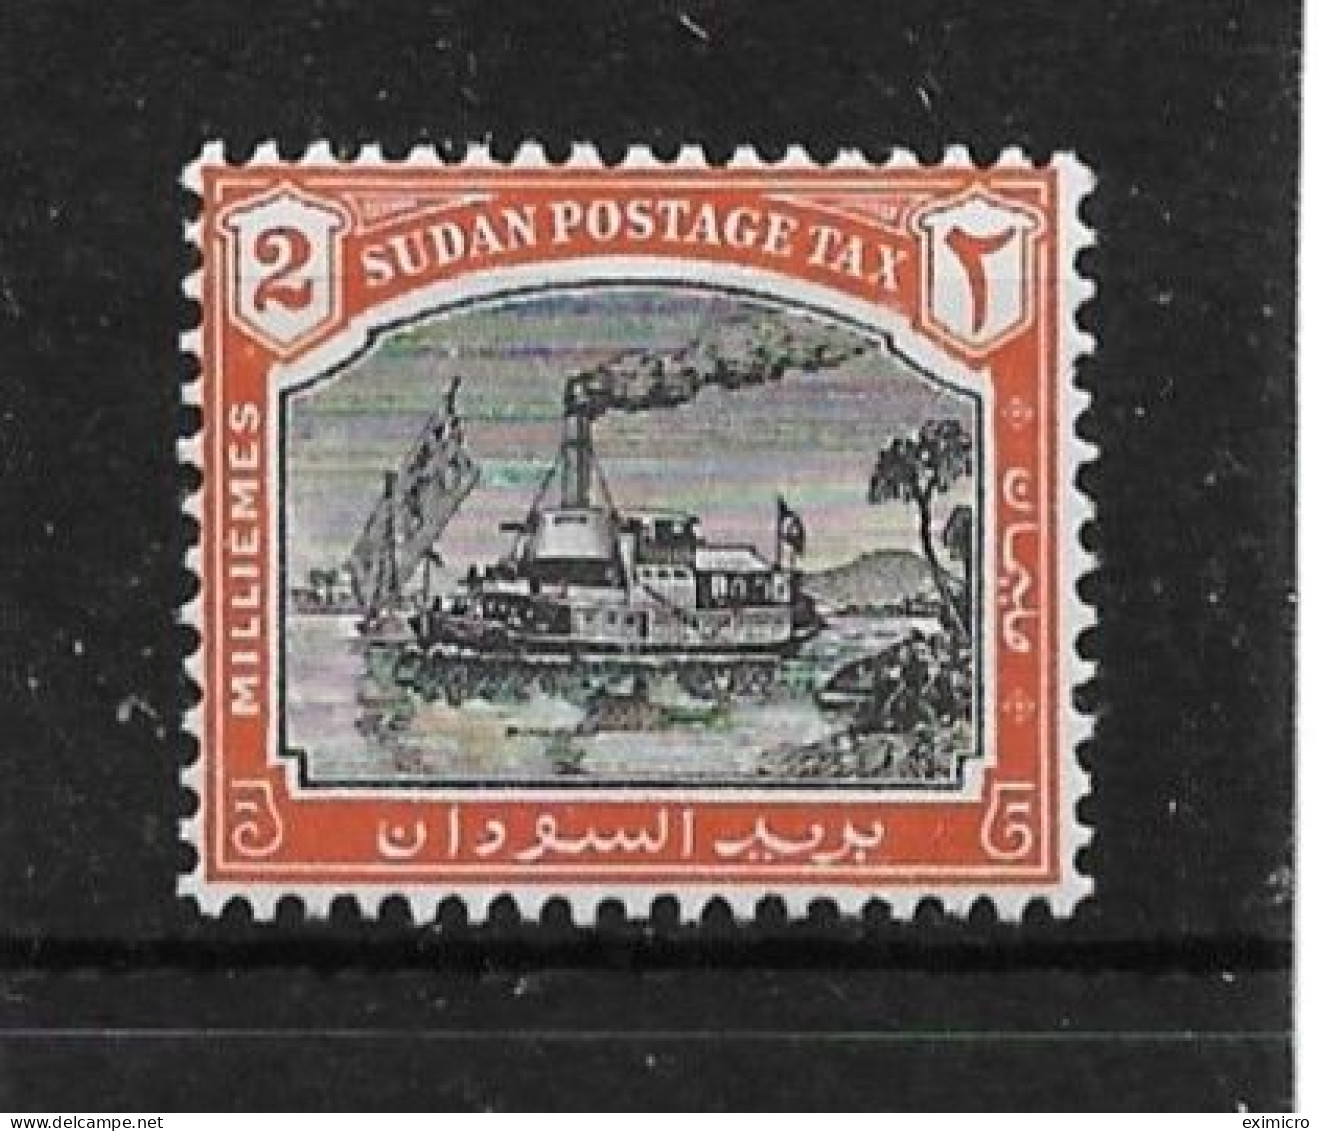 SUDAN 1948 2m POSTAGE DUE  SG D12 UNMOUNTED MINT Cat £5.50 - Sudan (...-1951)